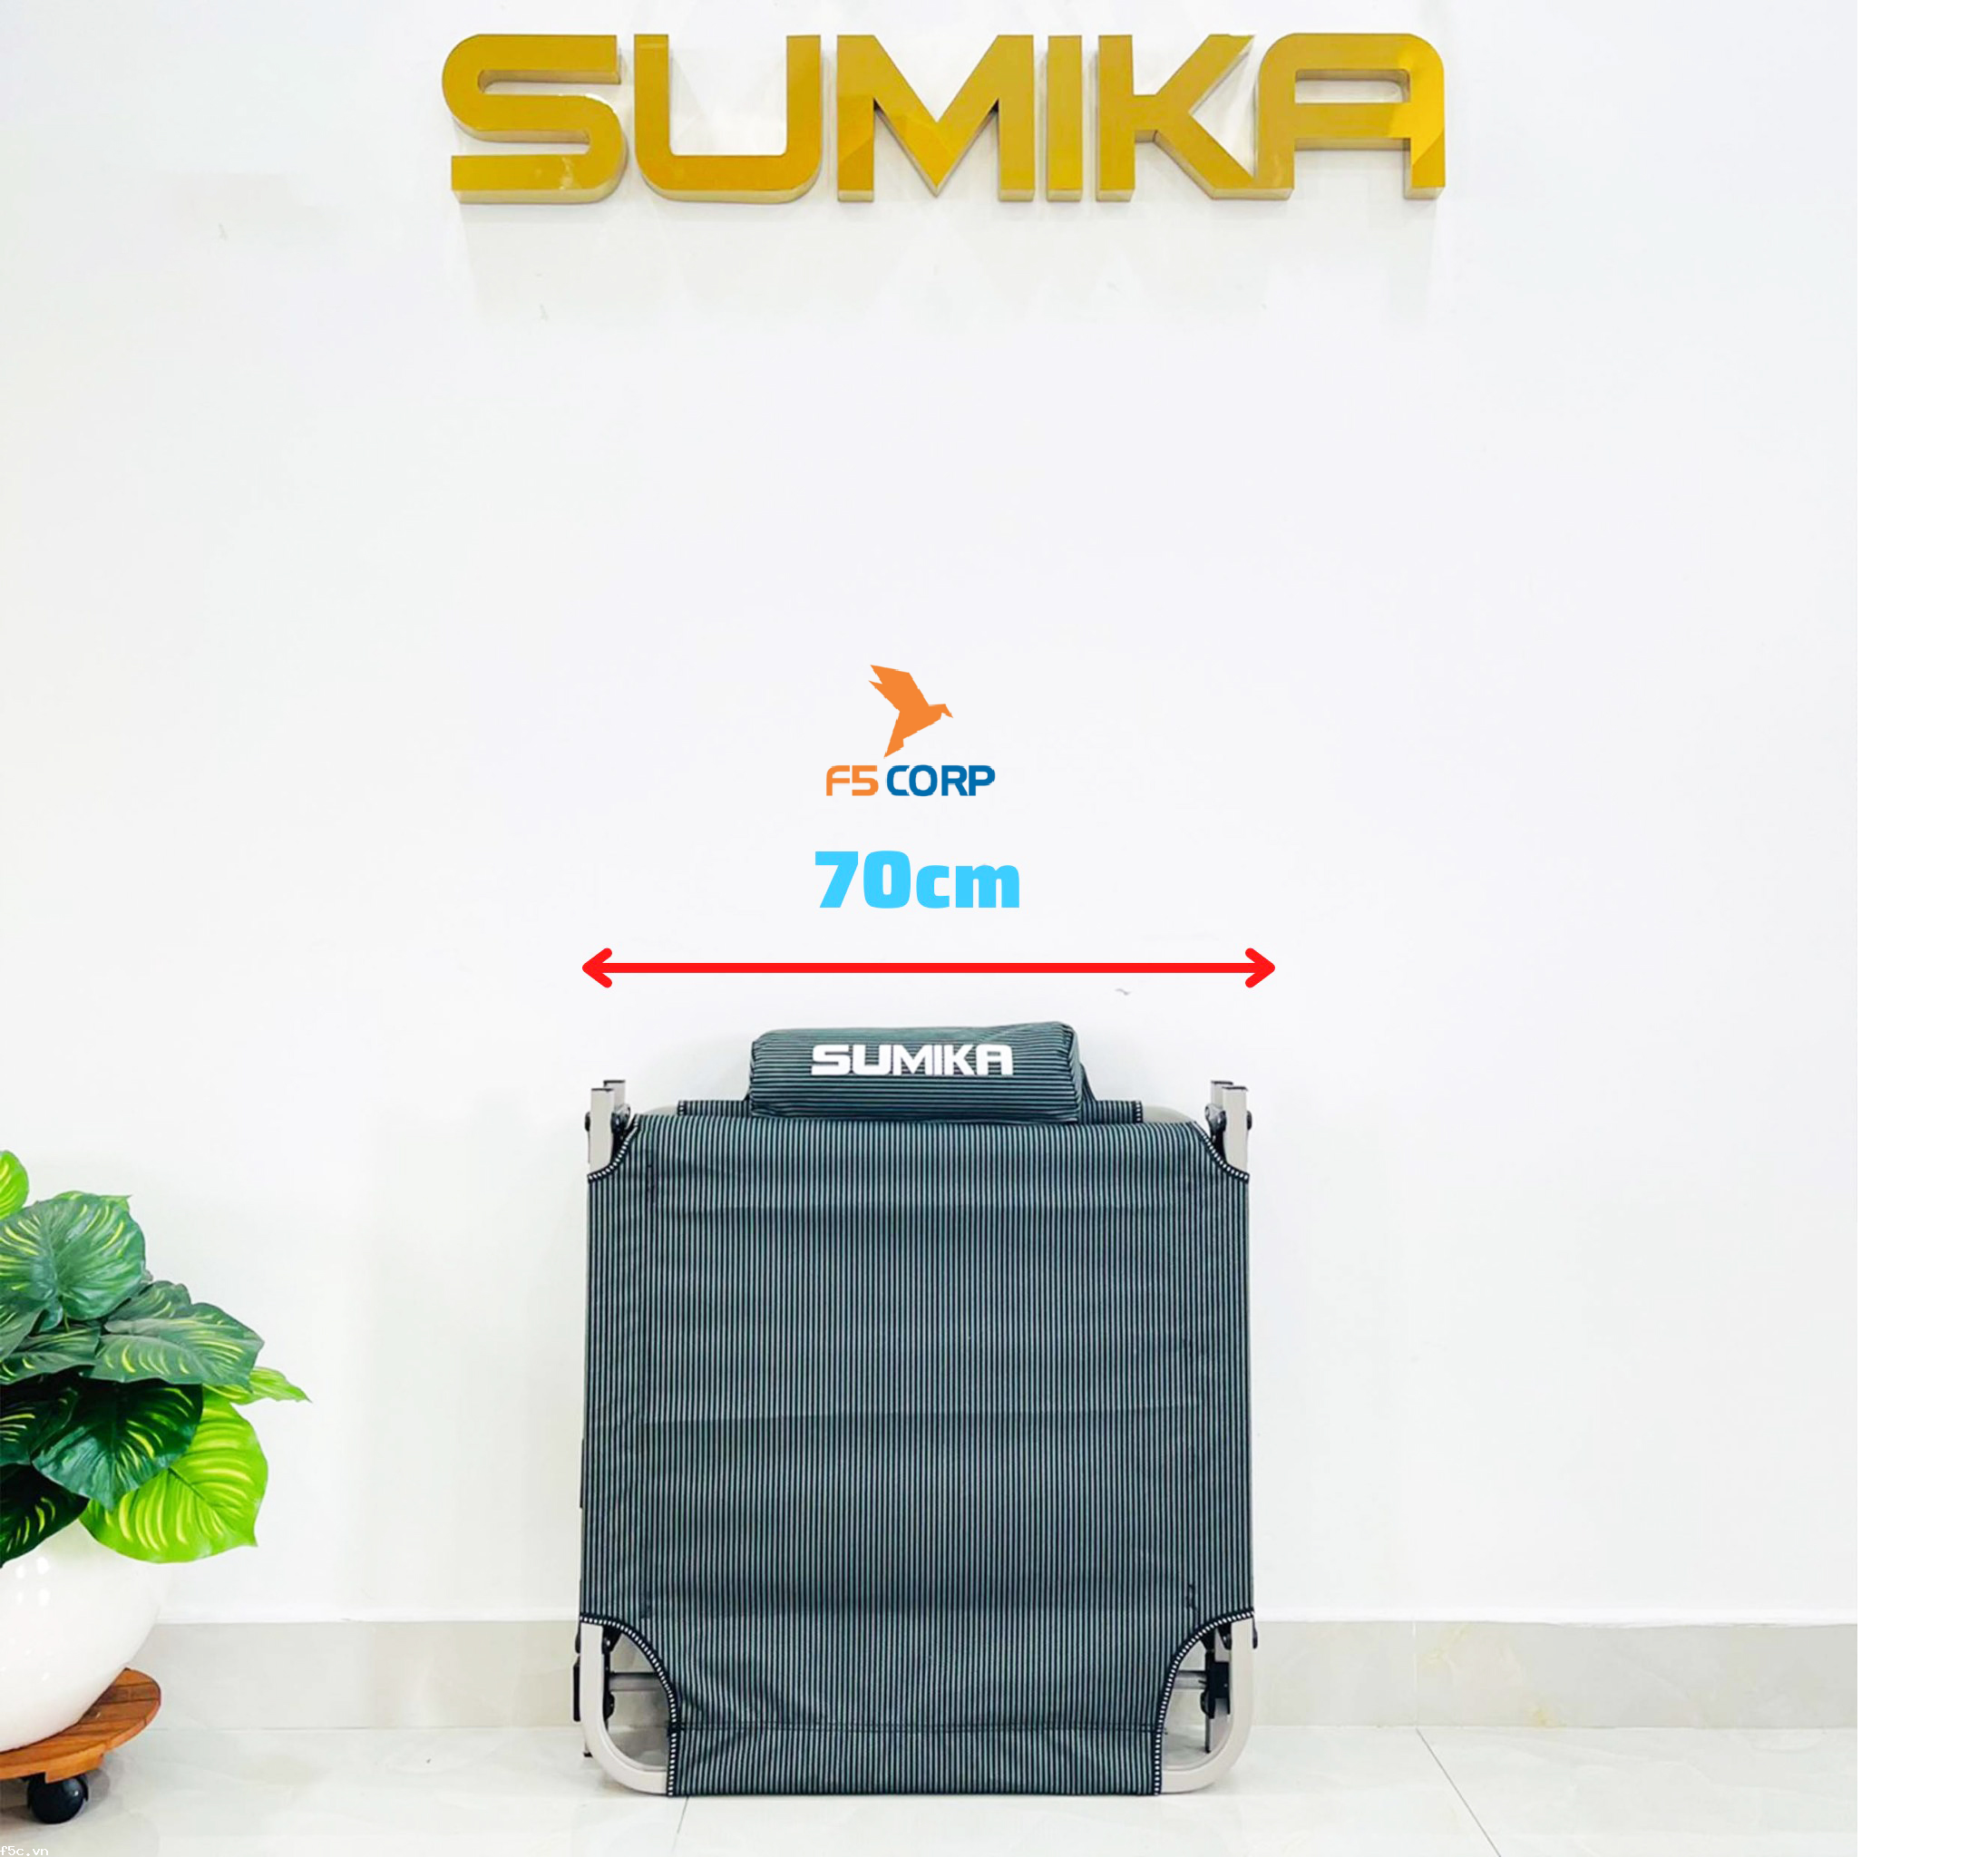 Giường bố xếp gọn đa năng SUMIKA 183